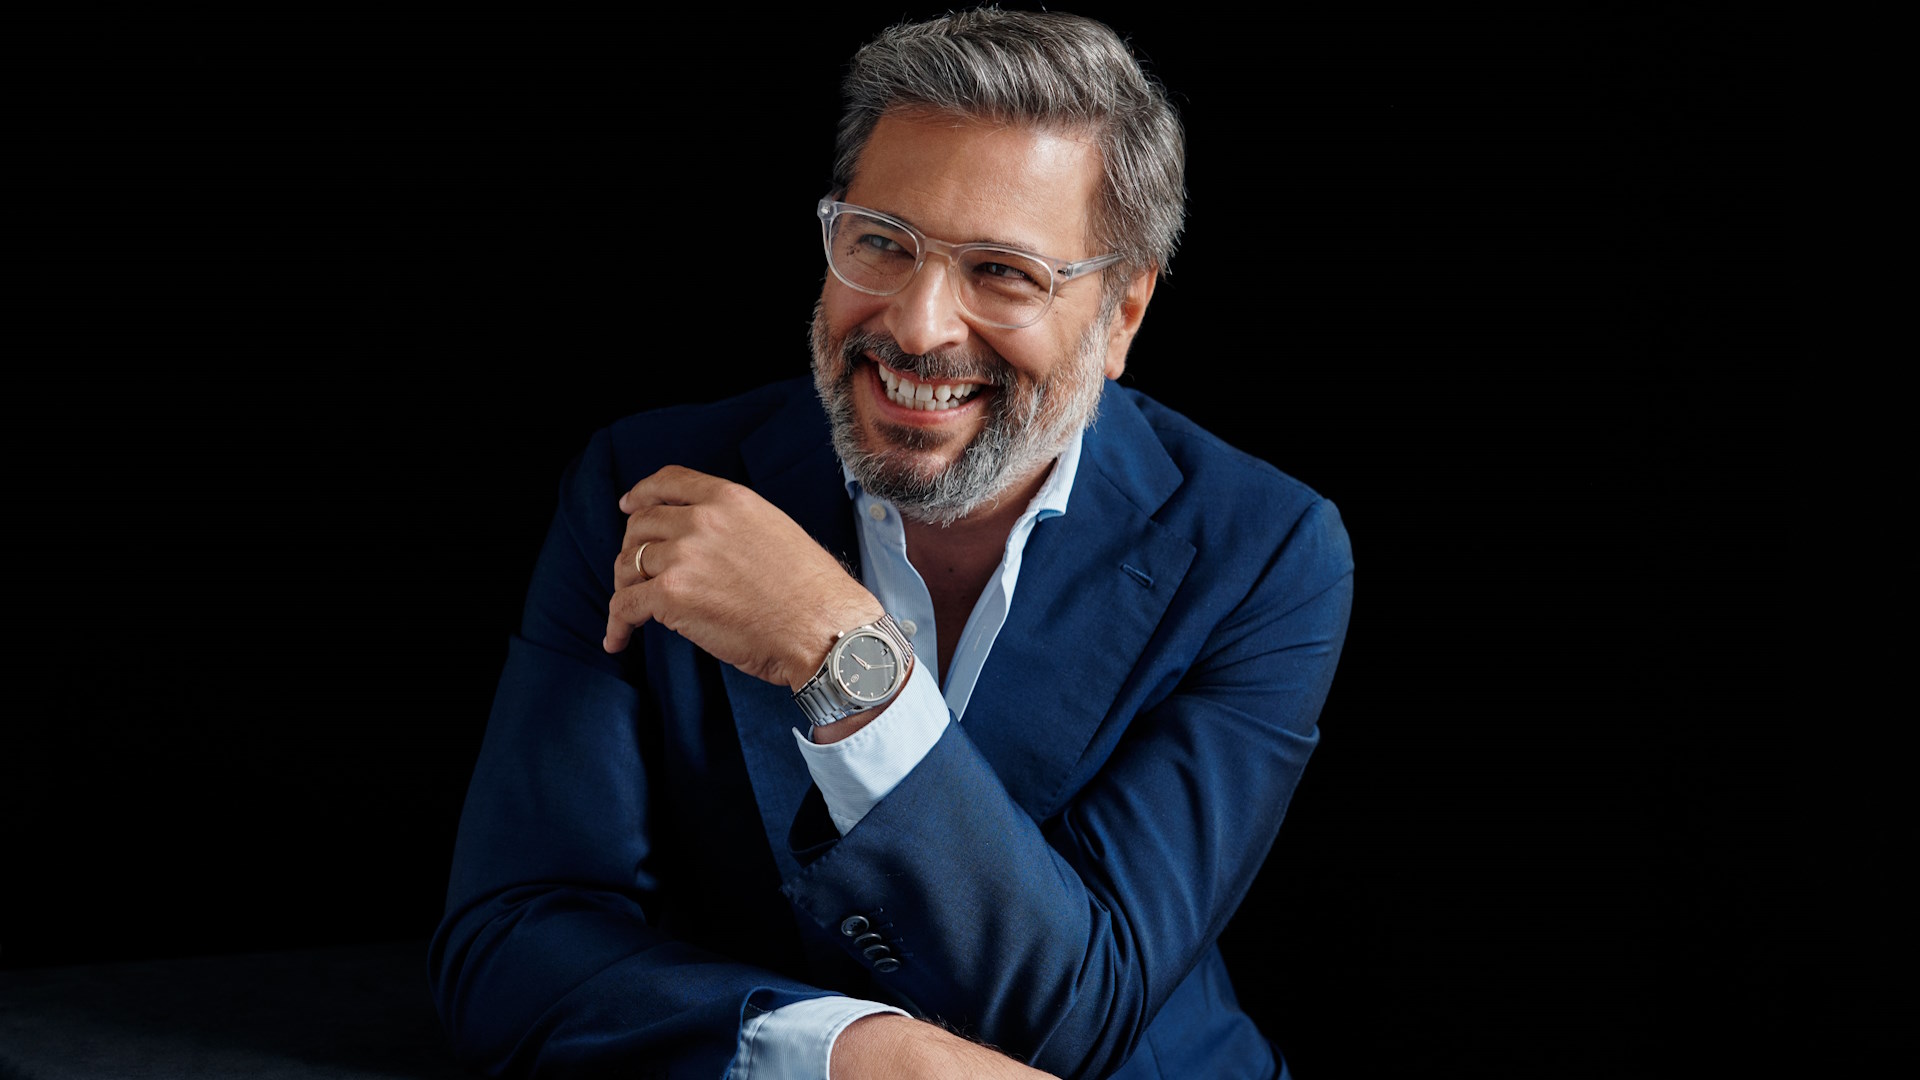 Guido Terreni, CEO von Parmigiani Fleurier